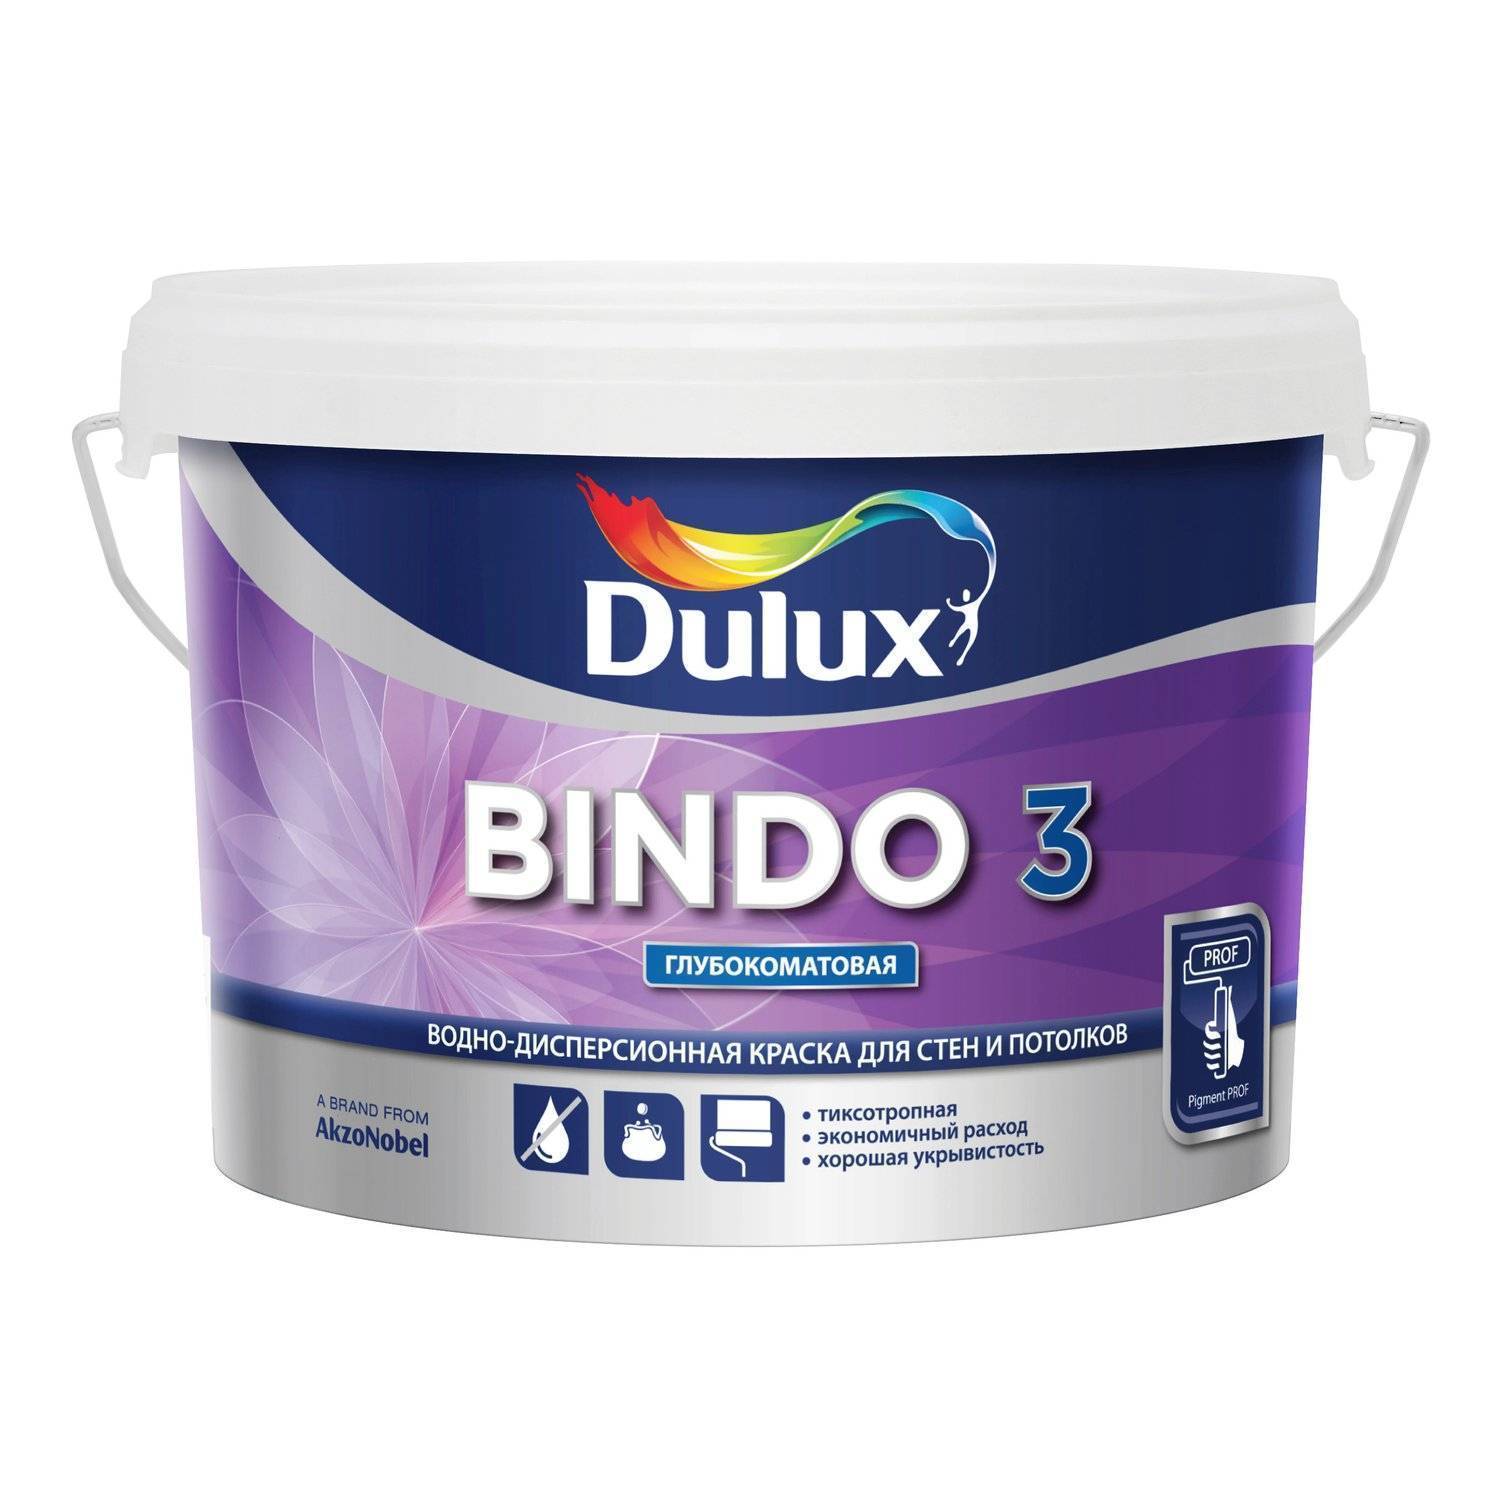 Dulux Prof Bindo 3 глубокоматовая краска для стен и потолков